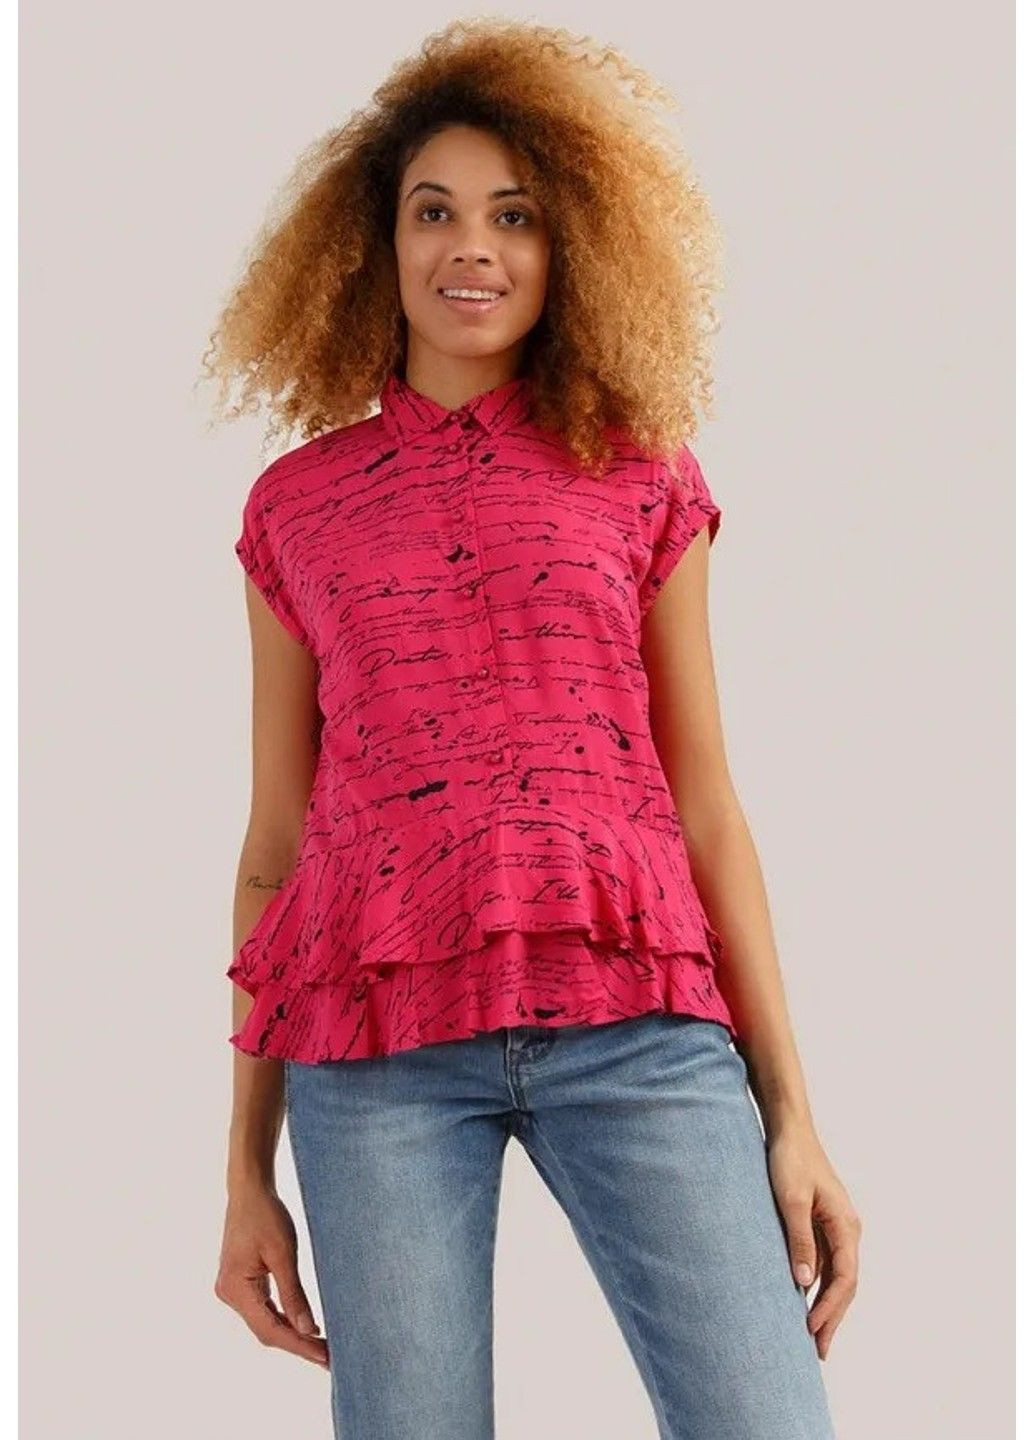 Розовая блузка s19-32020-811 Finn Flare